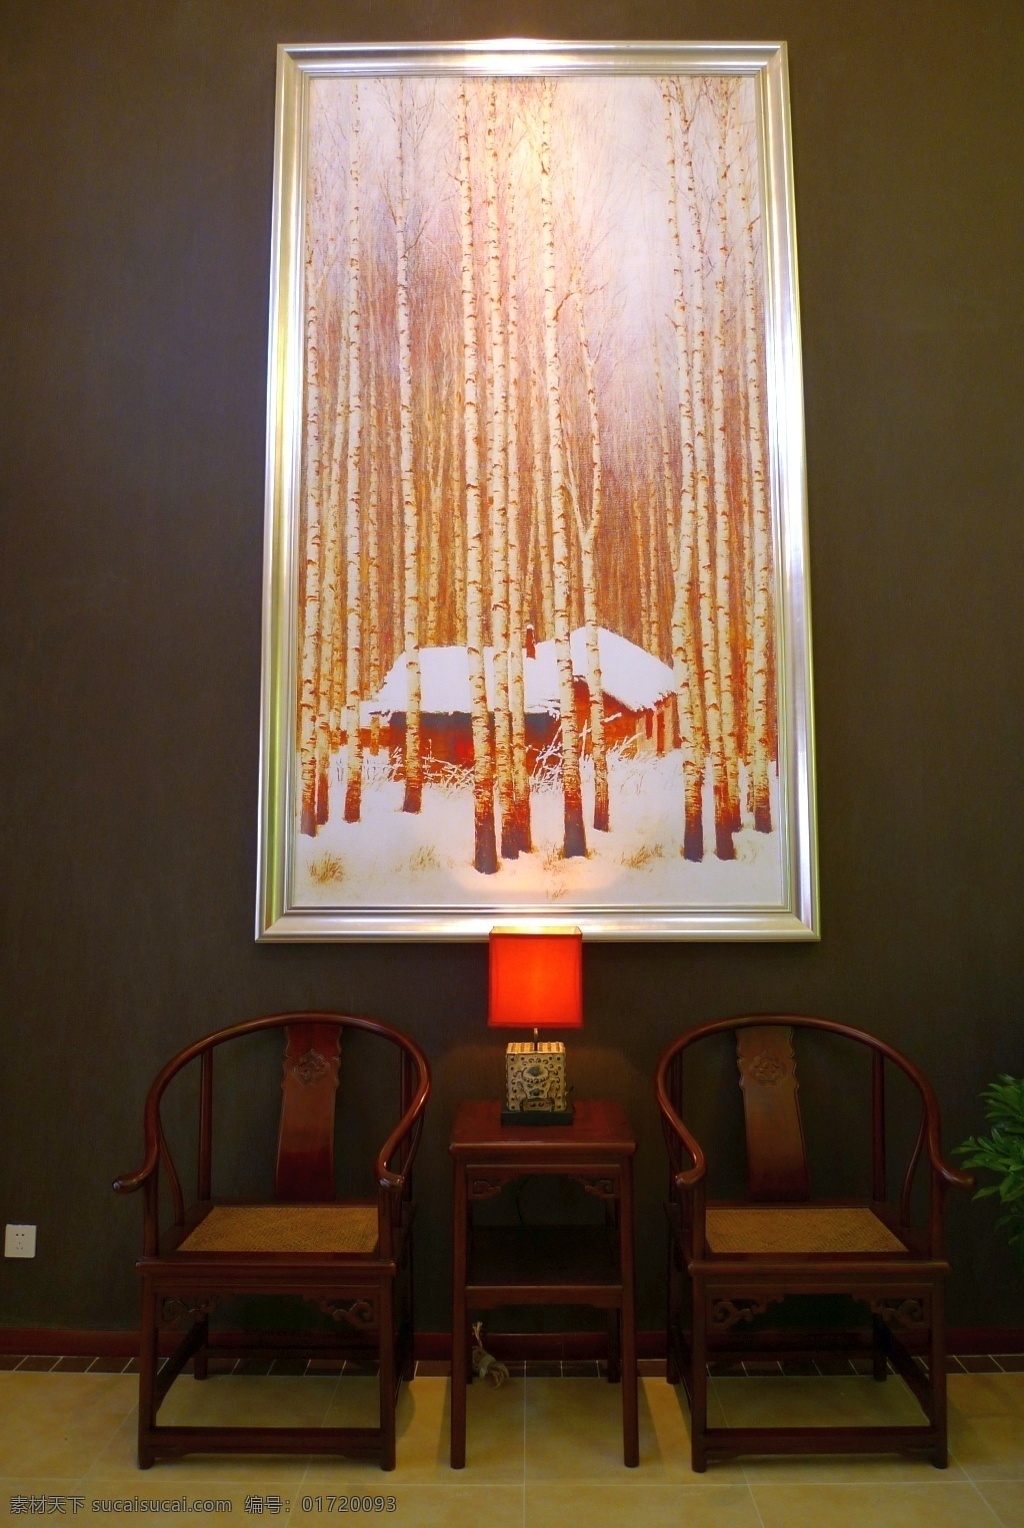 别墅 室内 背景 墙 装修 效果图 背景墙 黄色灯光 复古 木质太师椅 创意台灯